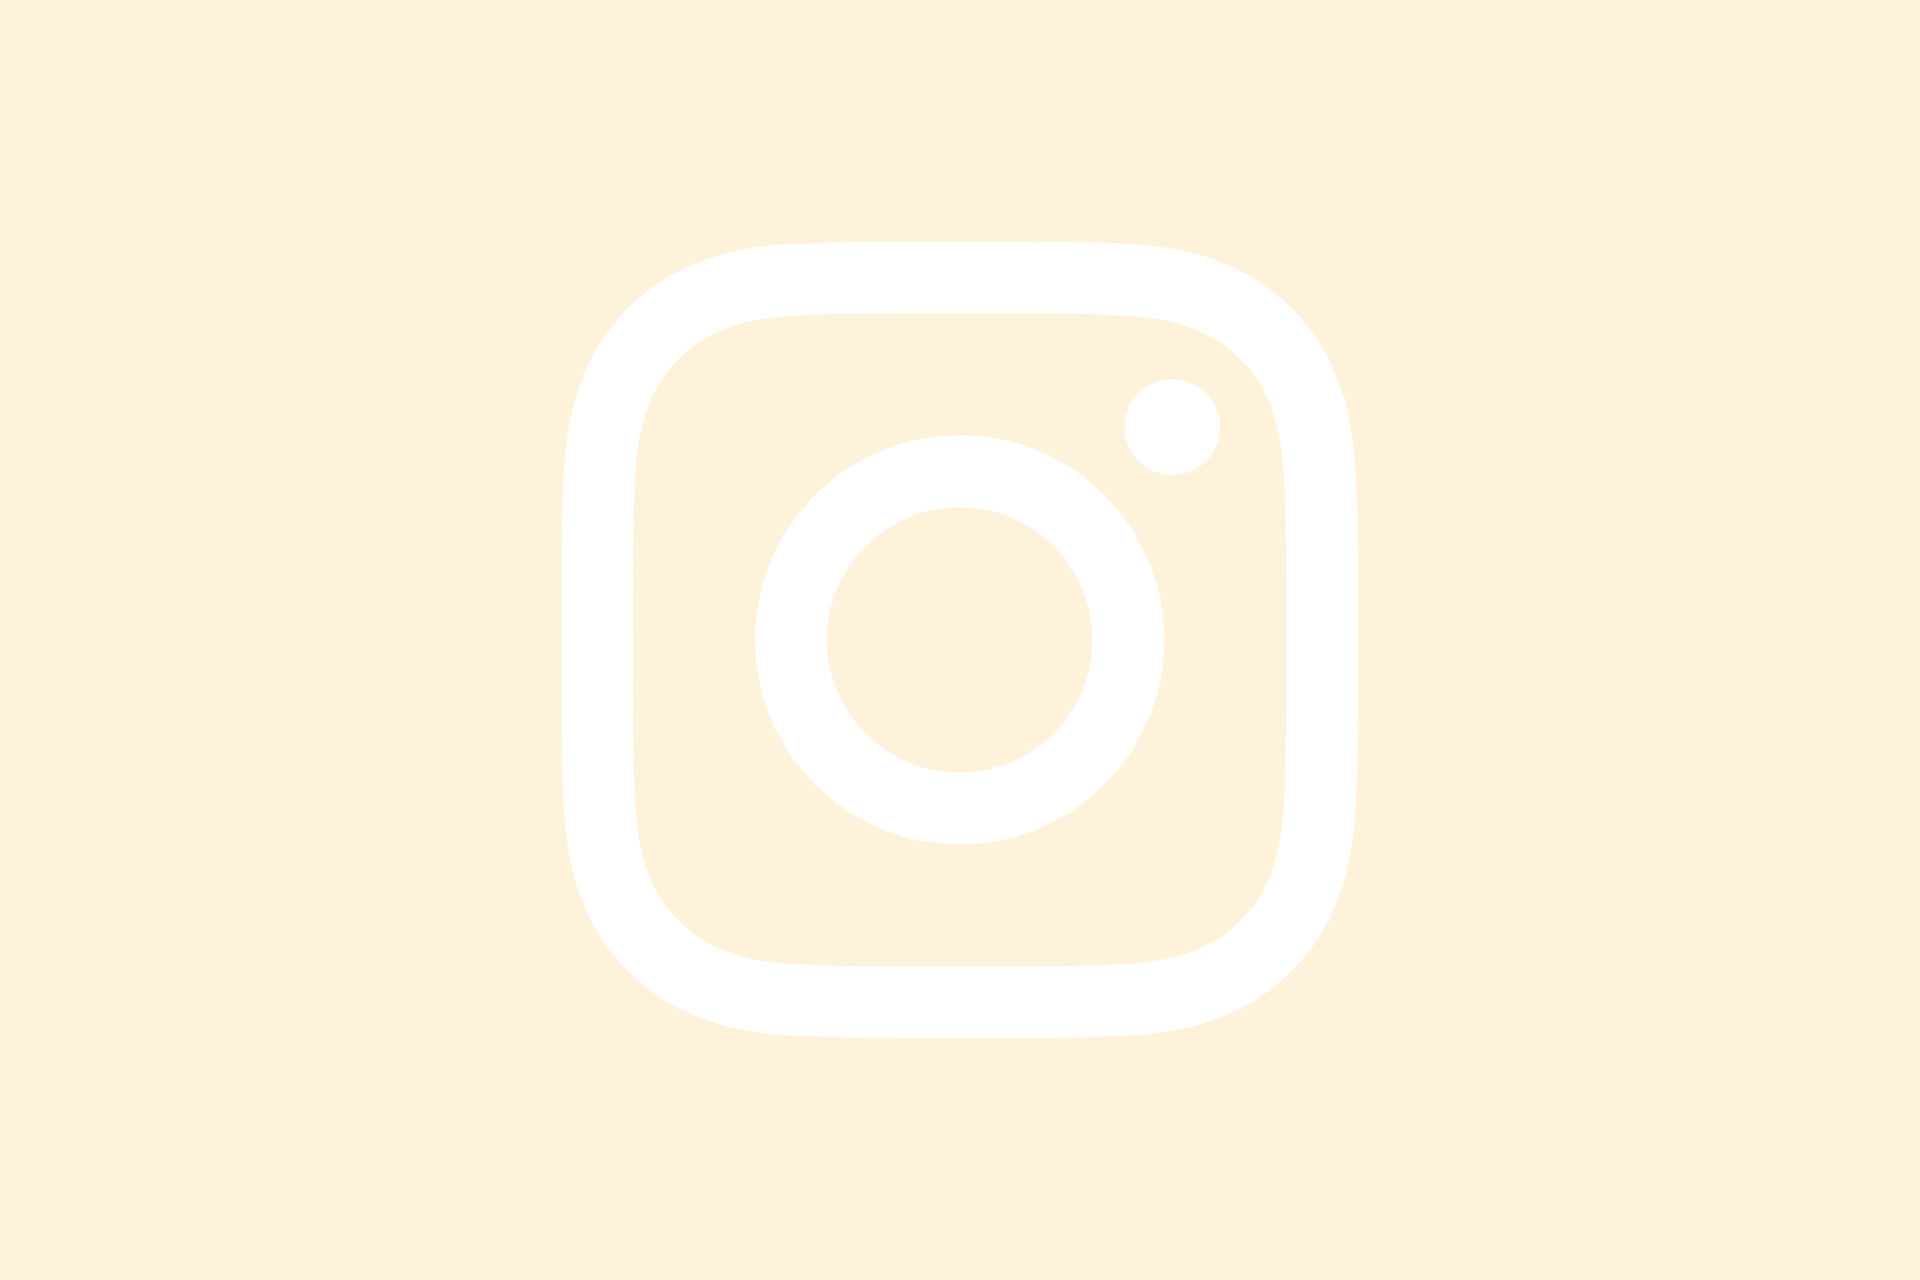 Instagramin valkoinen logo pastellin oranssilla taustalla.